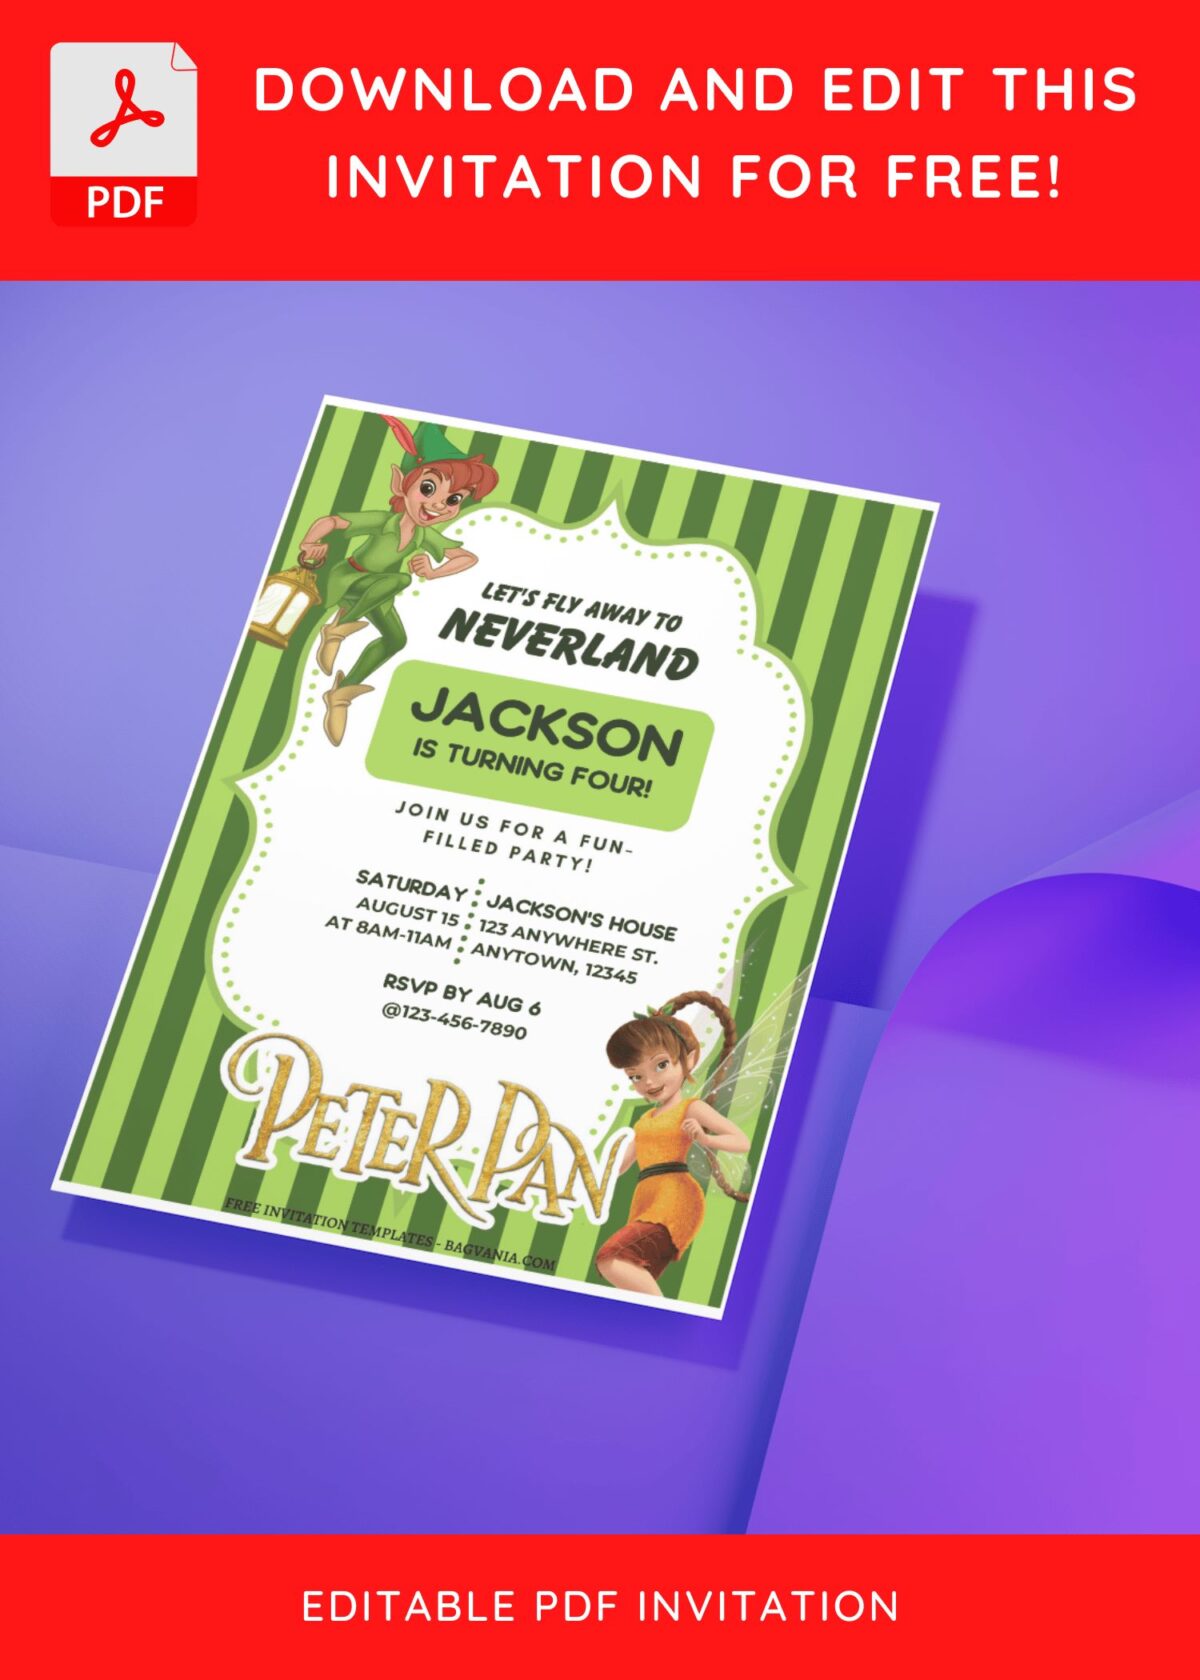 (Free Editable PDF) Peter Pan Wonderland Birthday Invitation Templates J